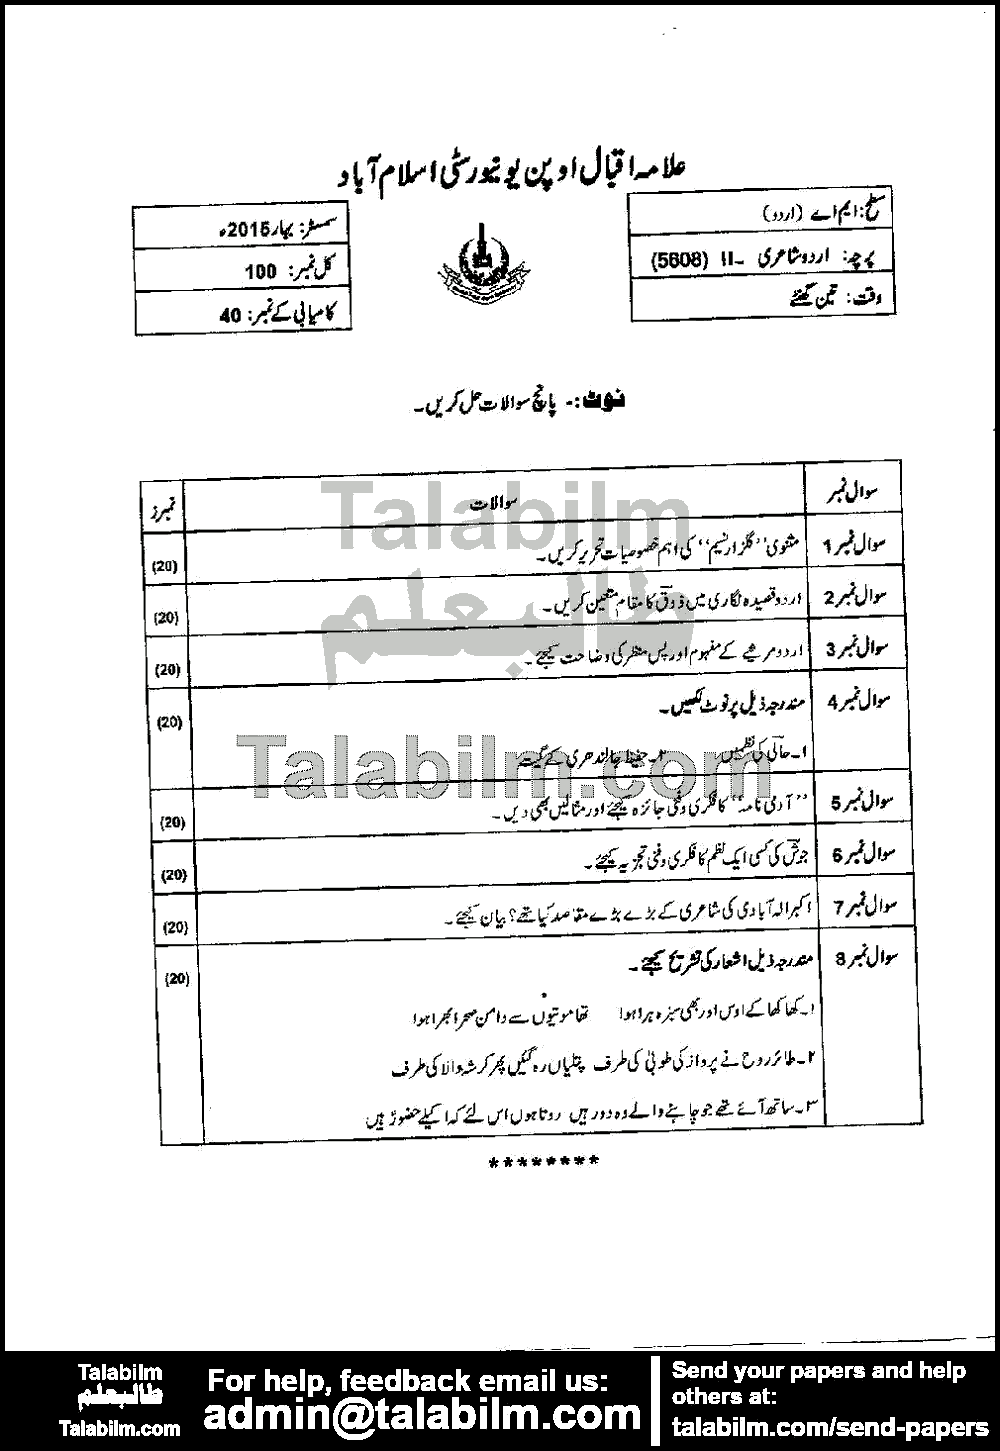 Urdu Poetry-II 5608 past paper for Spring 2015